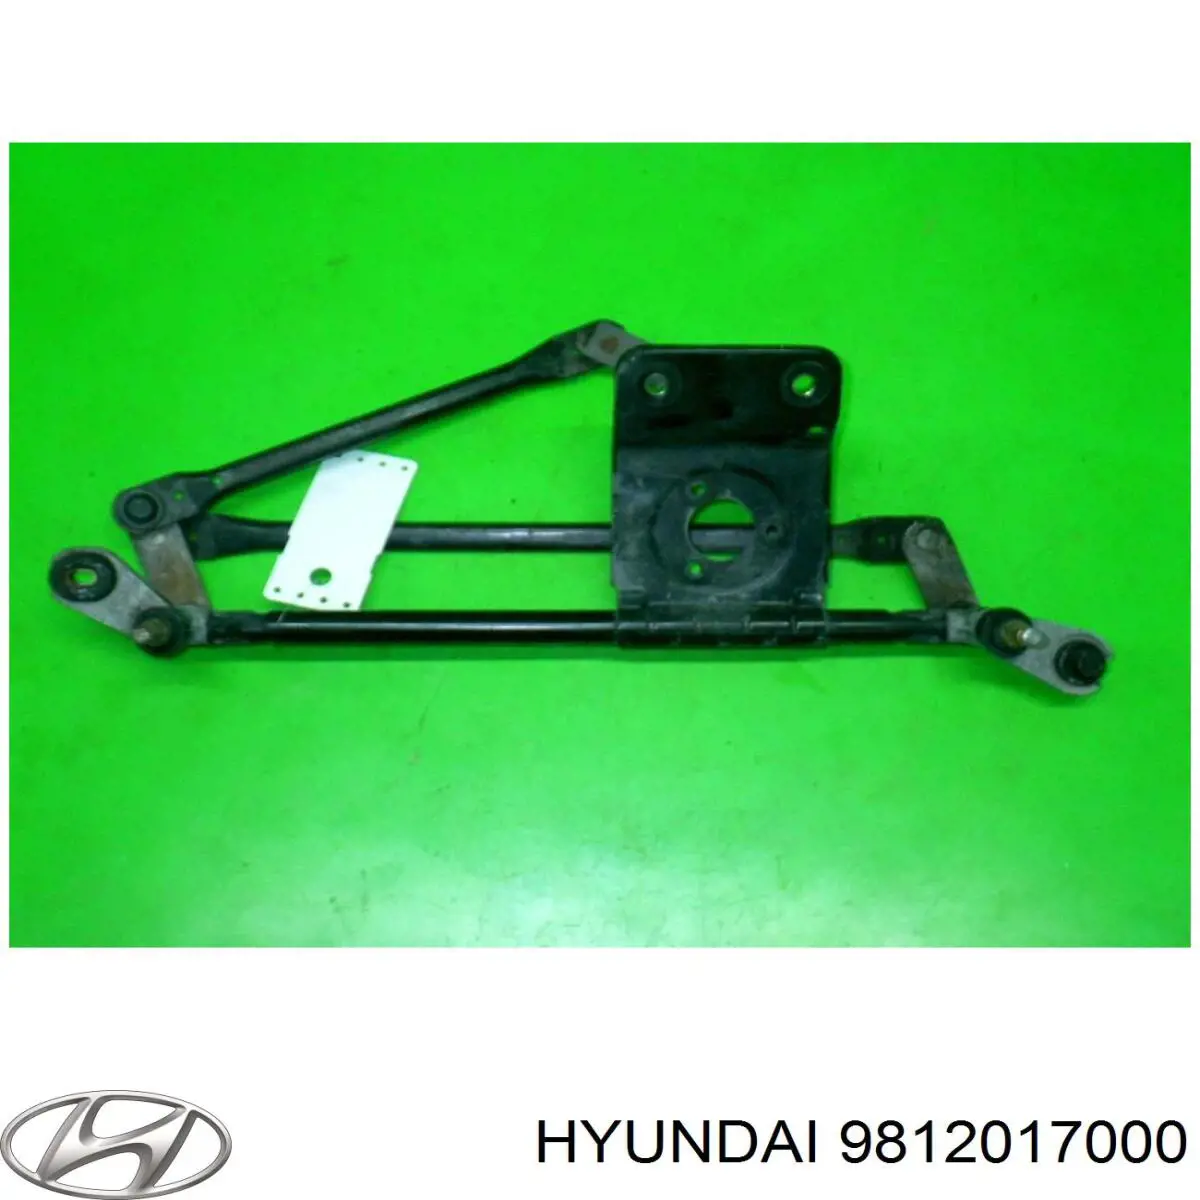 9812017000 Hyundai/Kia varillaje lavaparabrisas